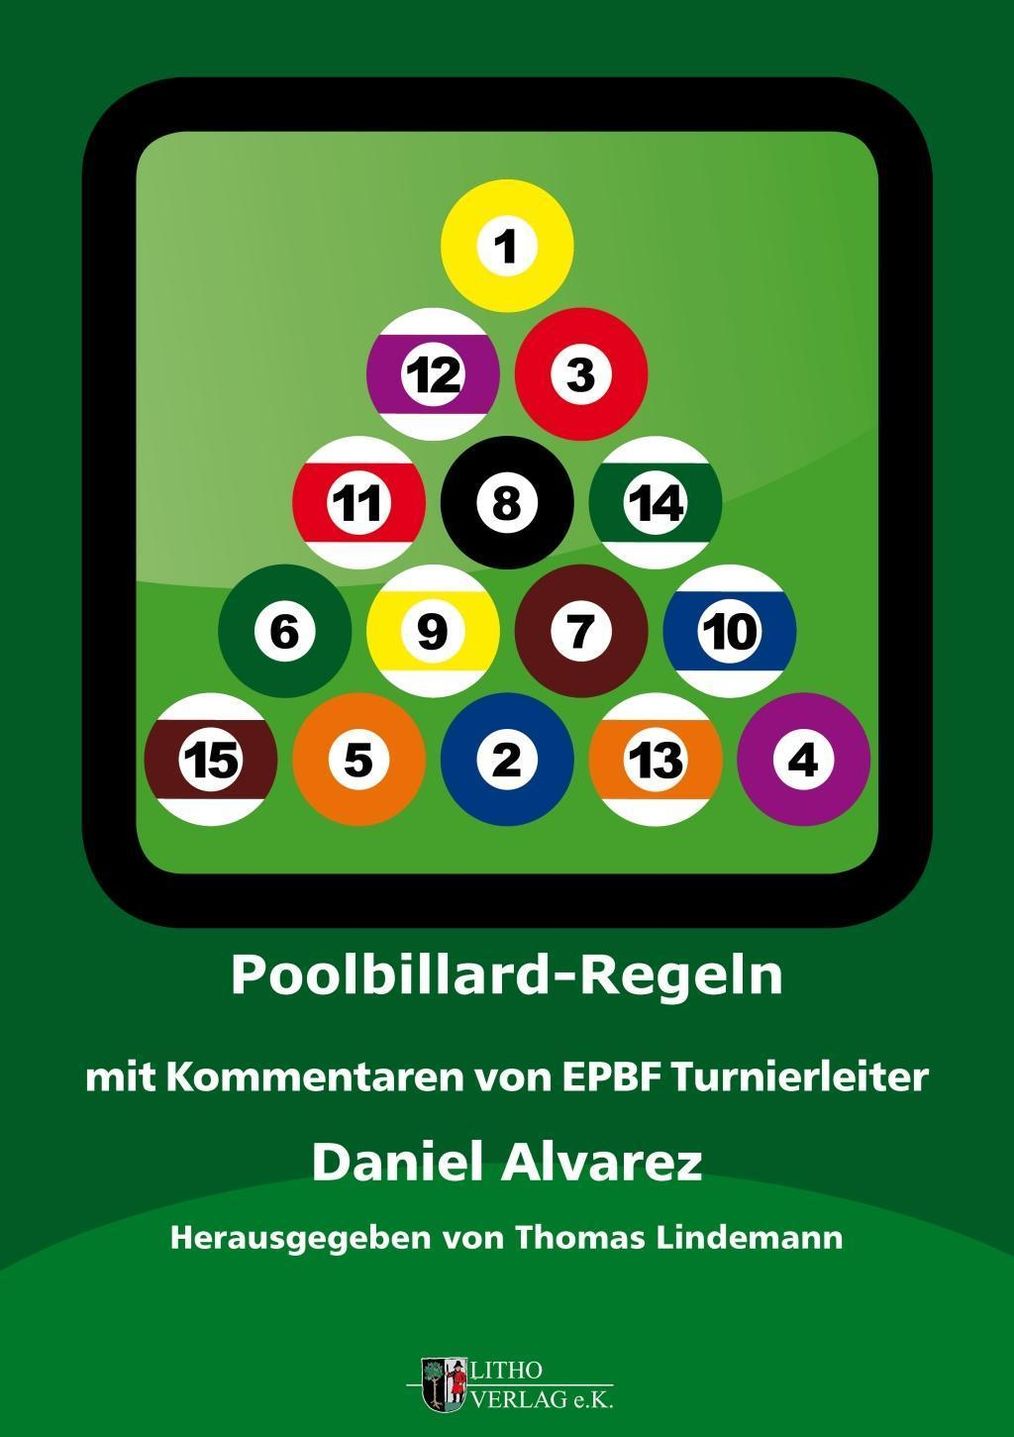 Poolbillard Regeln Buch von Daniel Alvarez versandkostenfrei - Weltbild.at